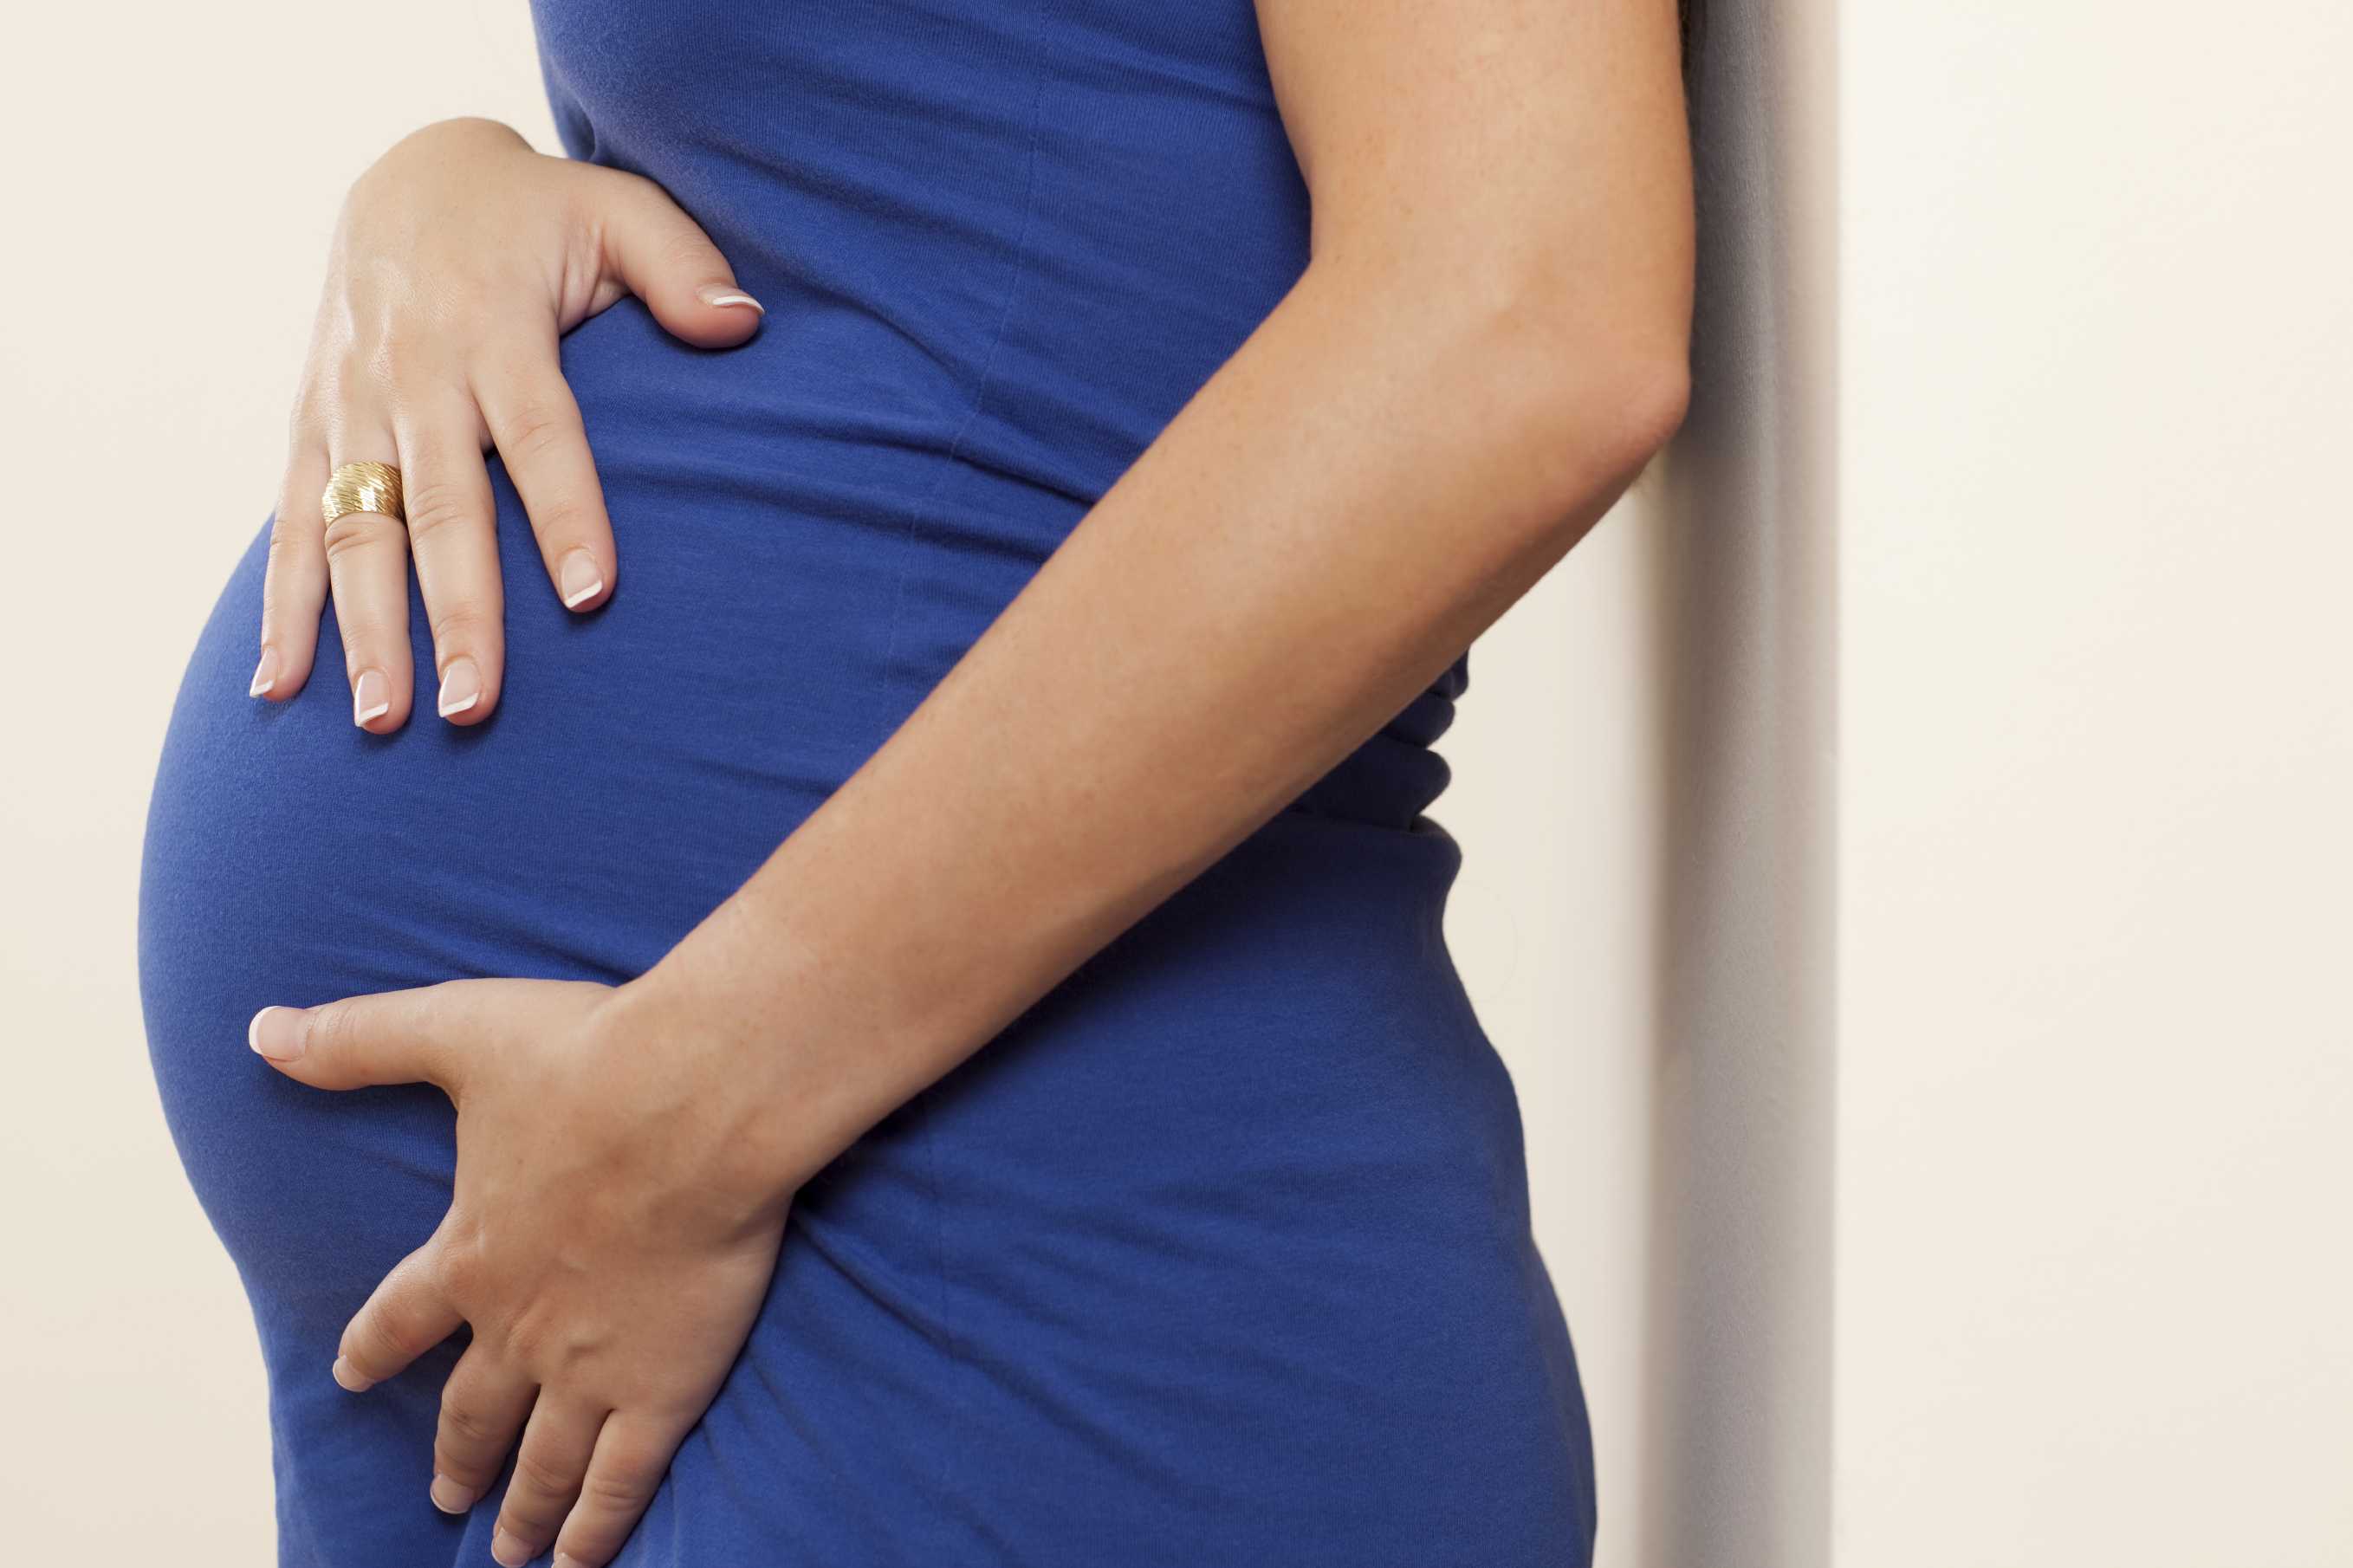 Симфизит при беременности (32 фото): симптомы и лечение, что это такое, признаки расхождения костей таза у беременных, бандаж и роды